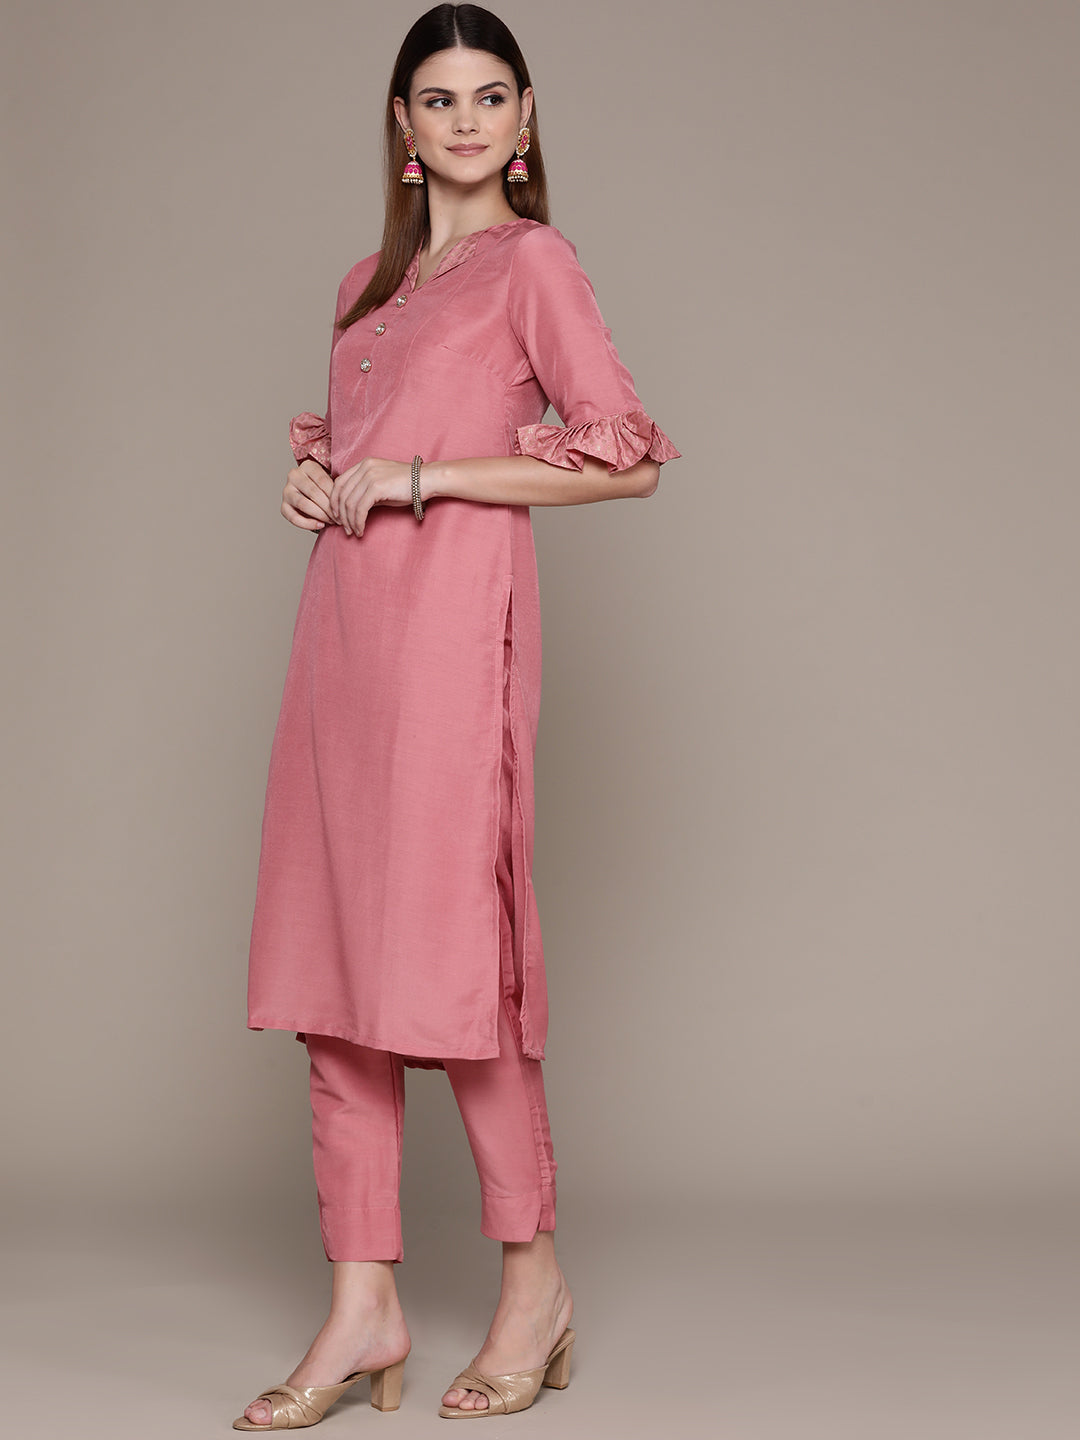 Women's Pink Chinon Kurta, Pant And Dupatta Set - Ziyaa